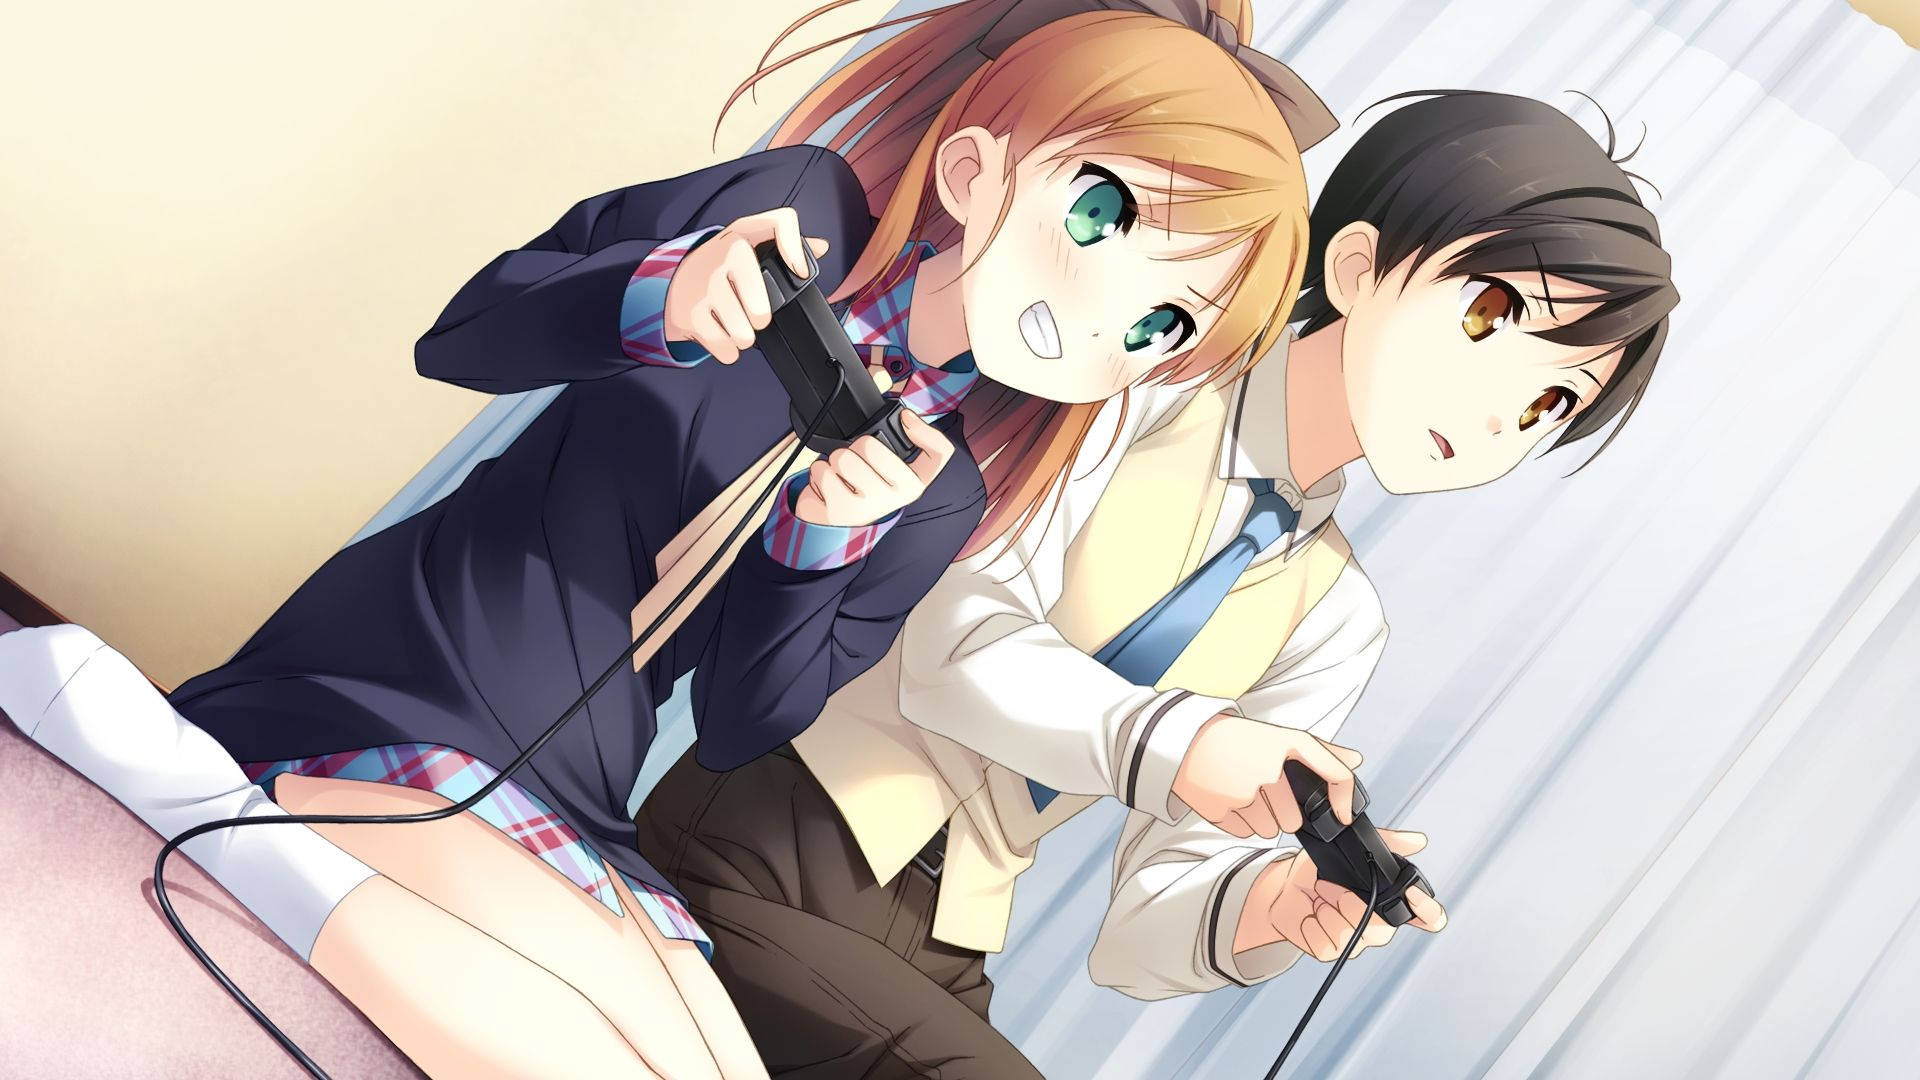 Cute Anime Couple HD Wallpapers  PixelsTalkNet